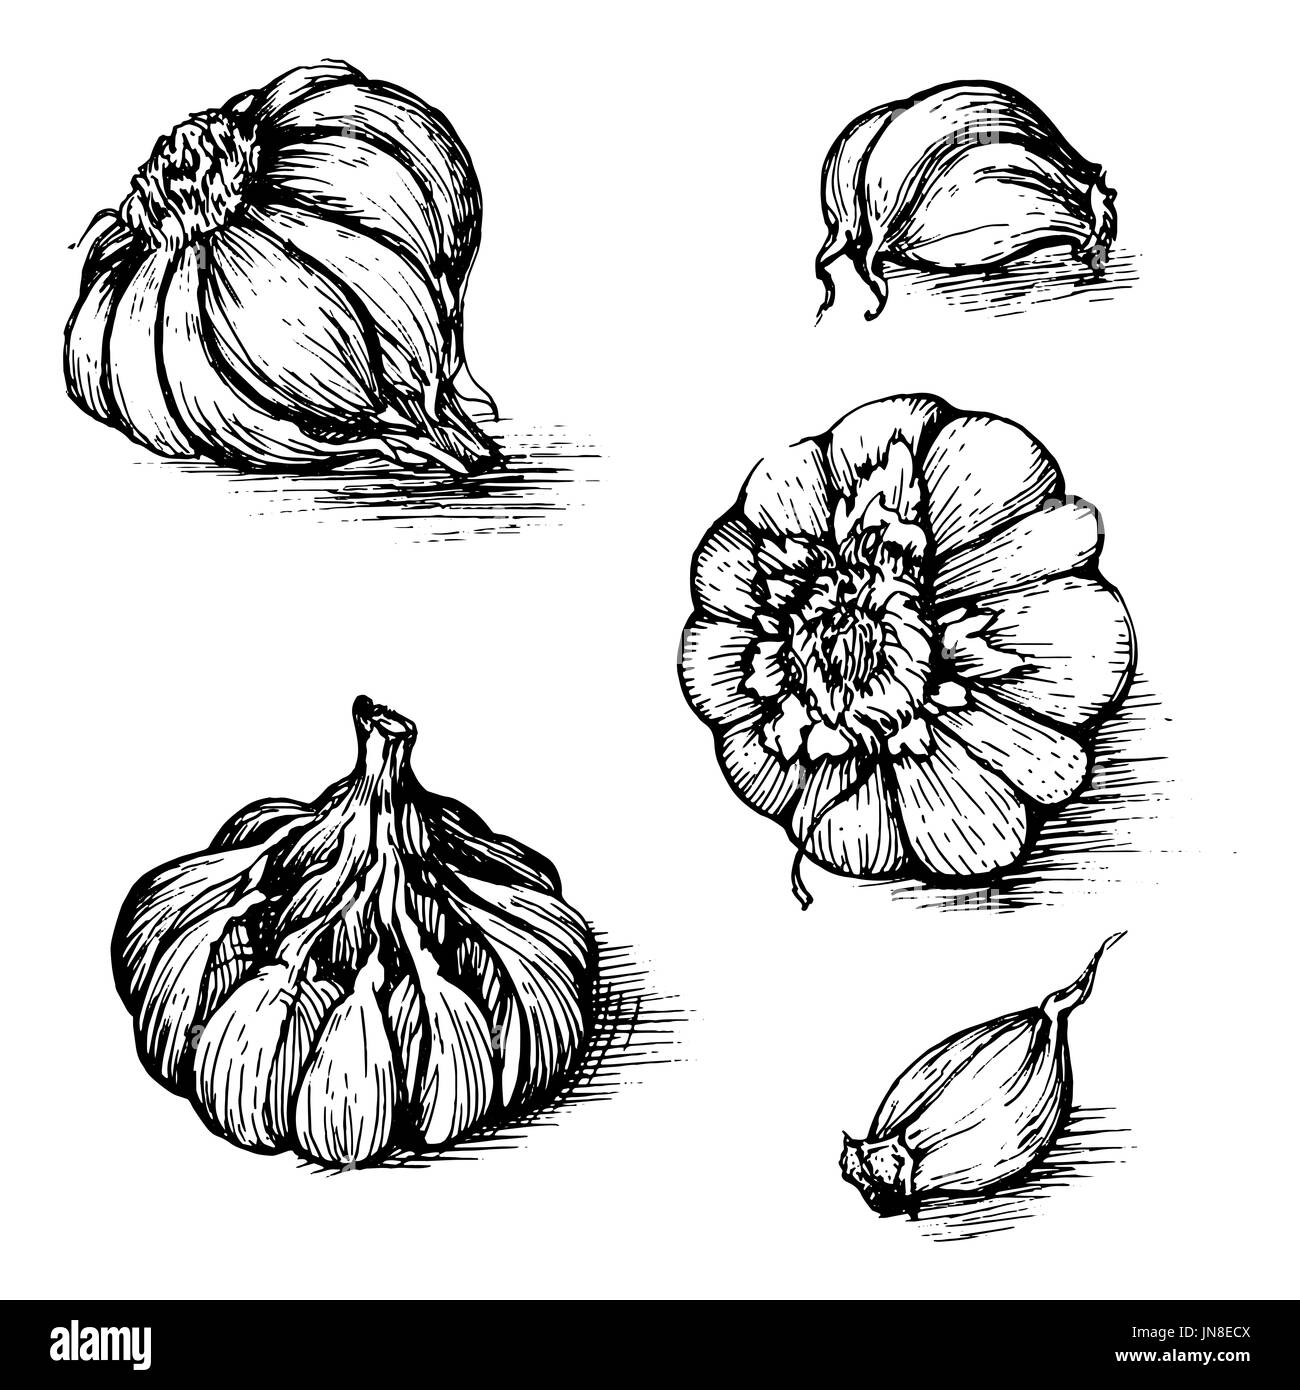 Disegnata a mano insieme di aglio con chiodi di garofano. Spezie schizzo illustrazione isolati su sfondo bianco. Foto Stock